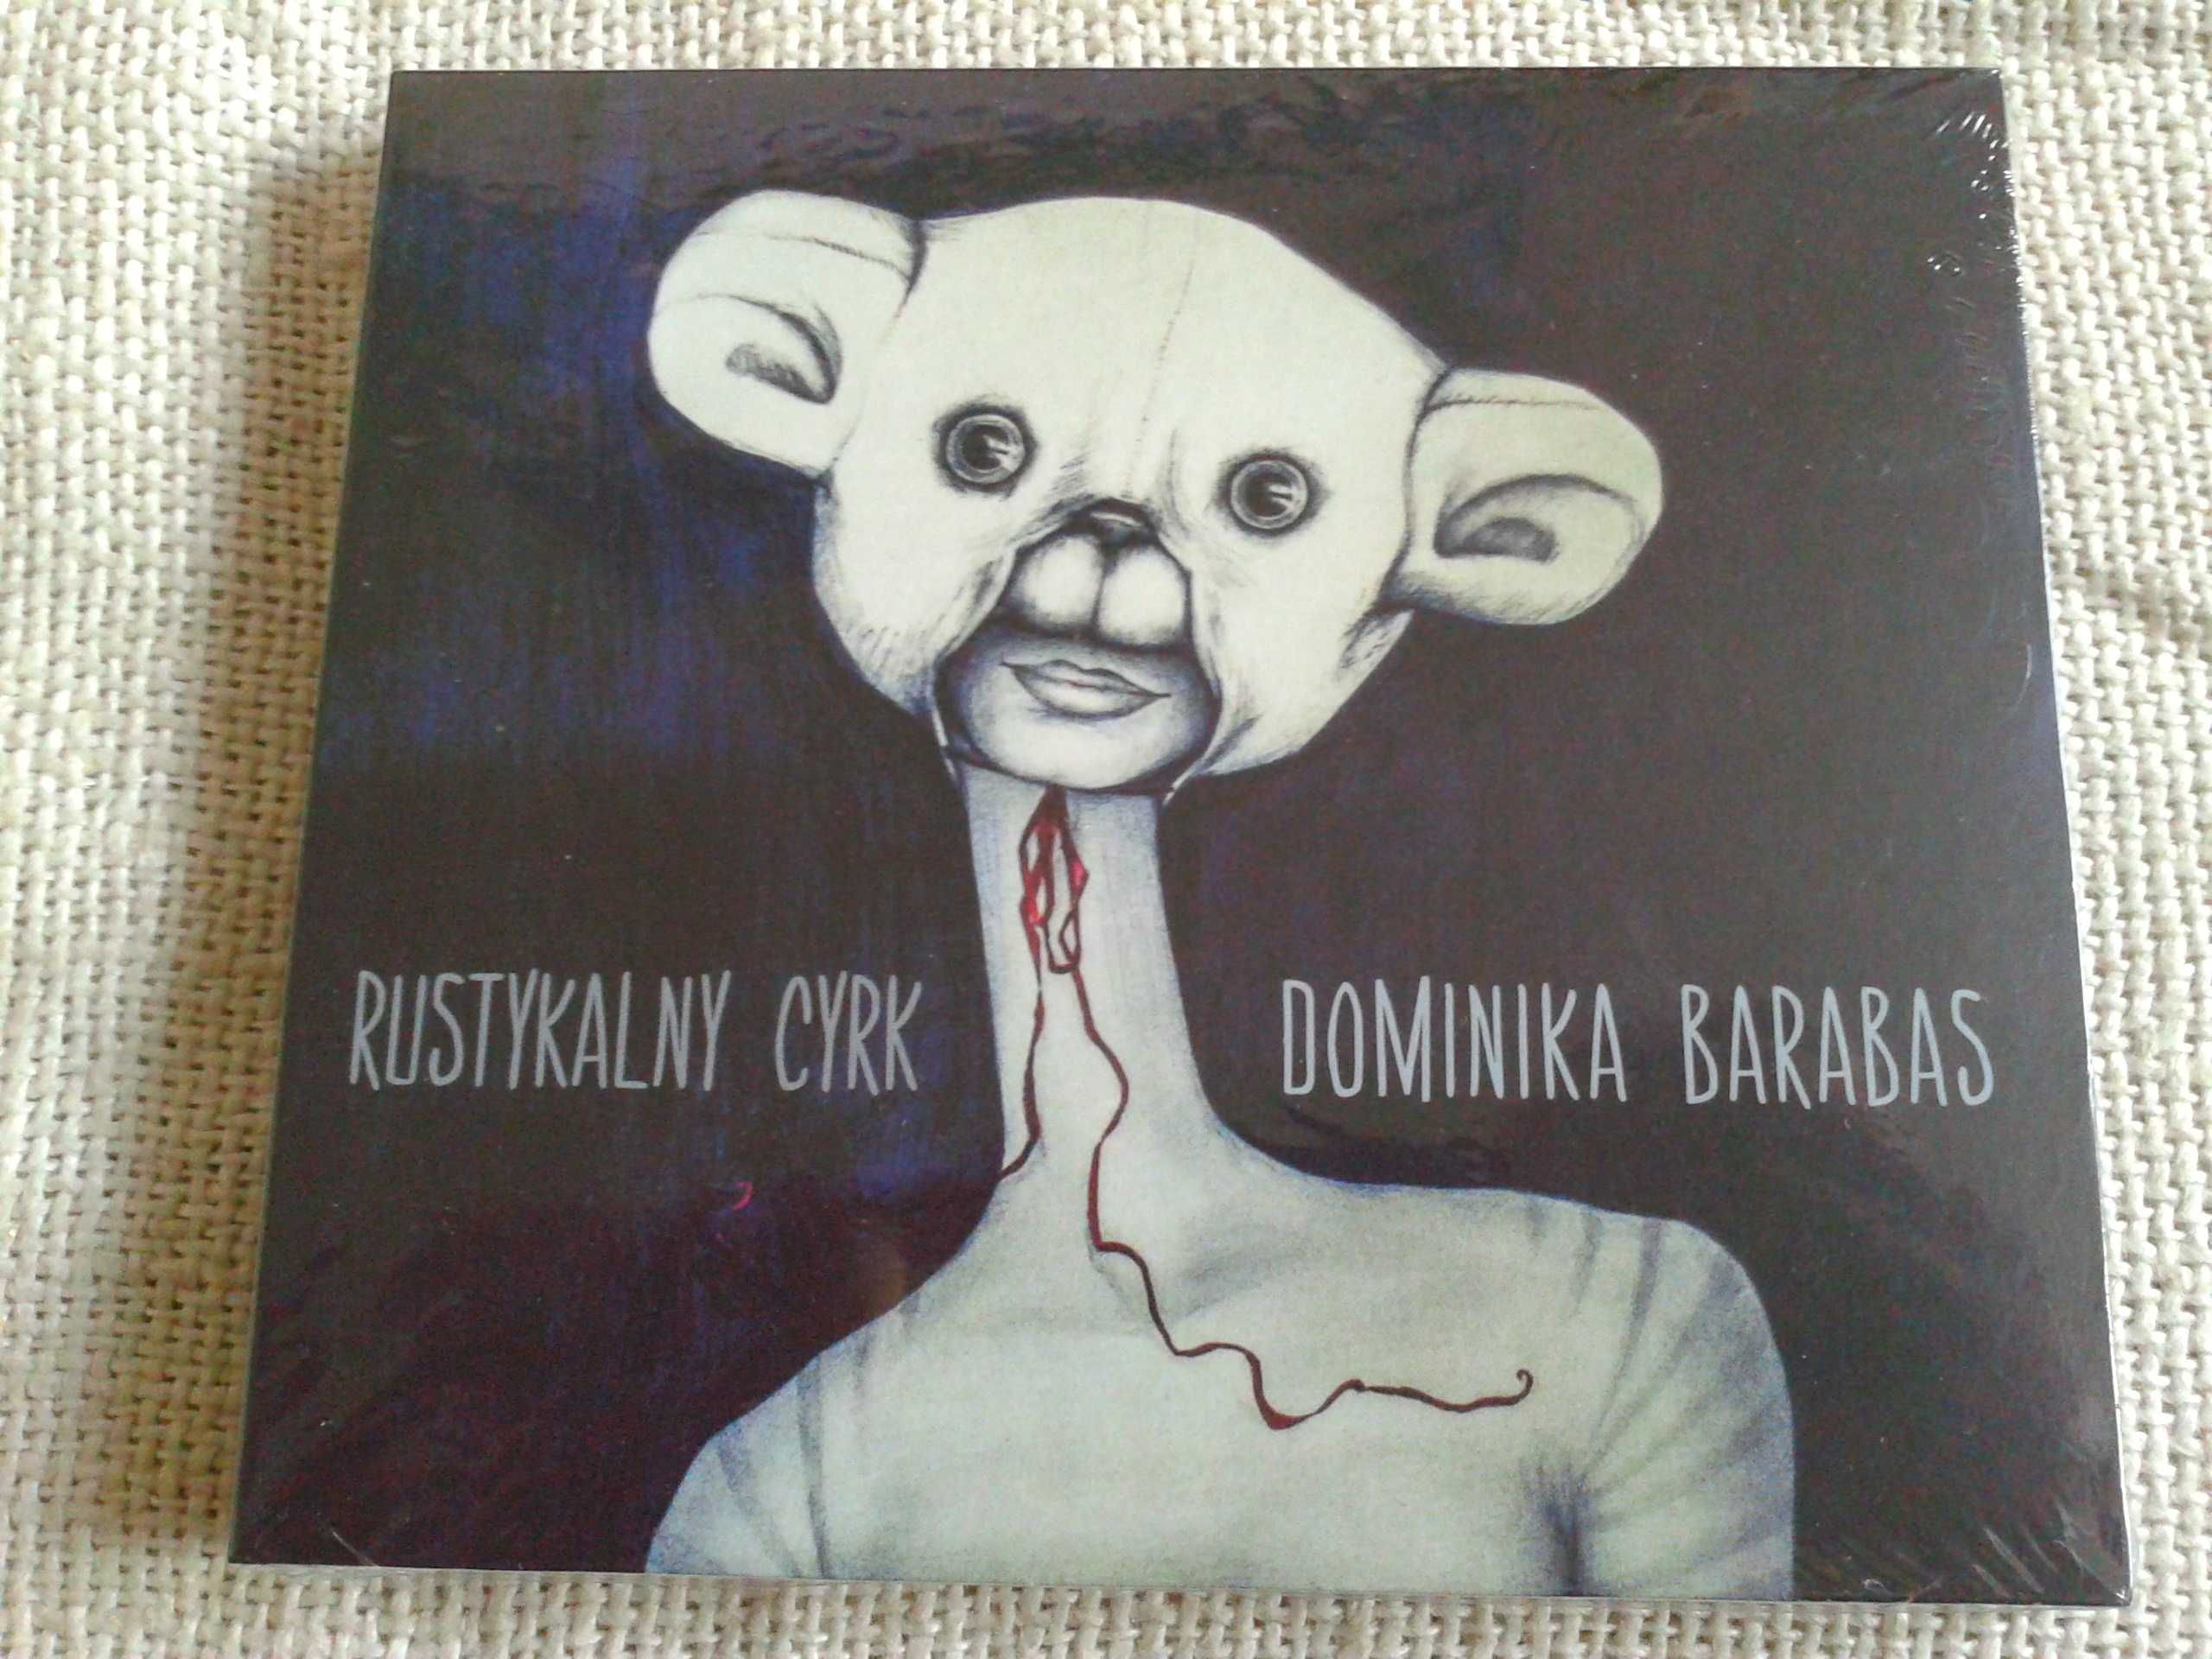 Dominika Barabas - Rustykalny cyrk  CD